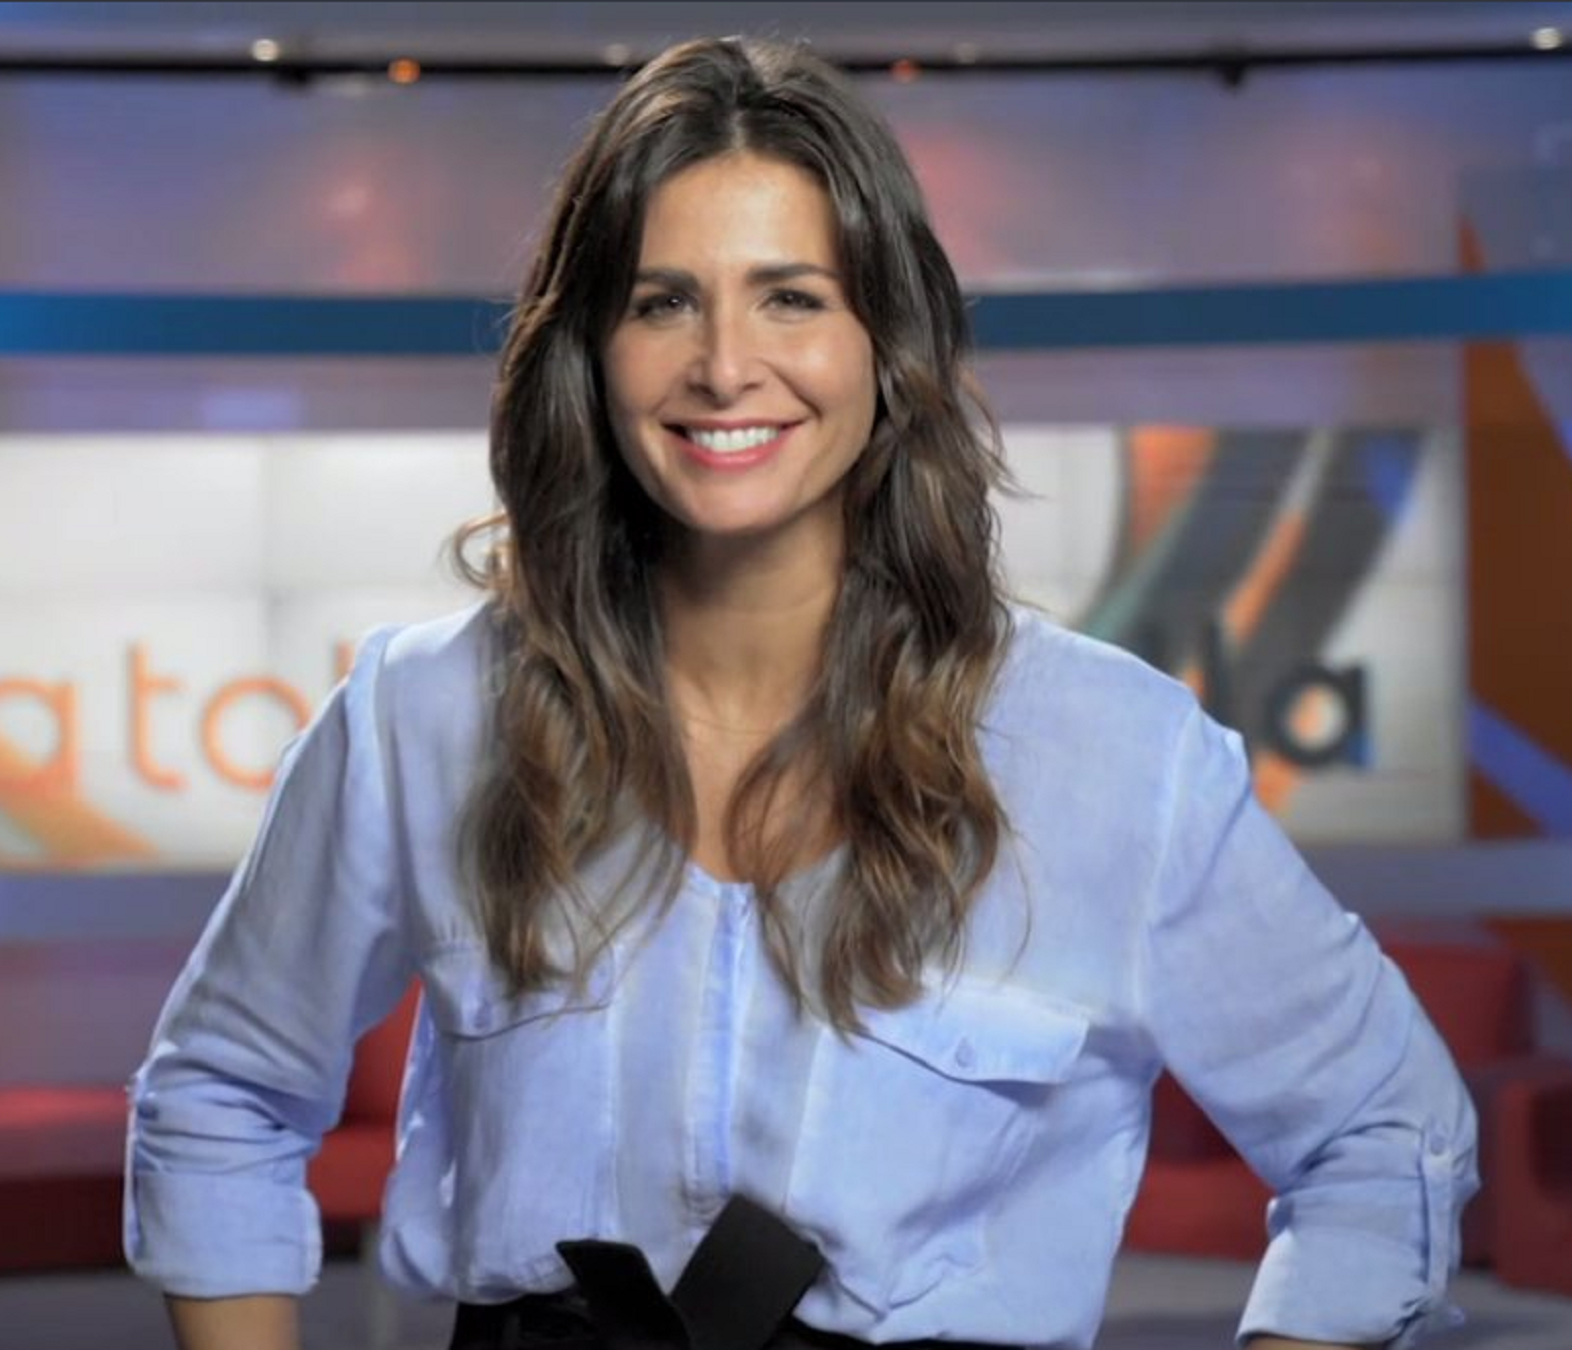 La red fusila a Nuria Roca antes de saber su audiencia en TV3